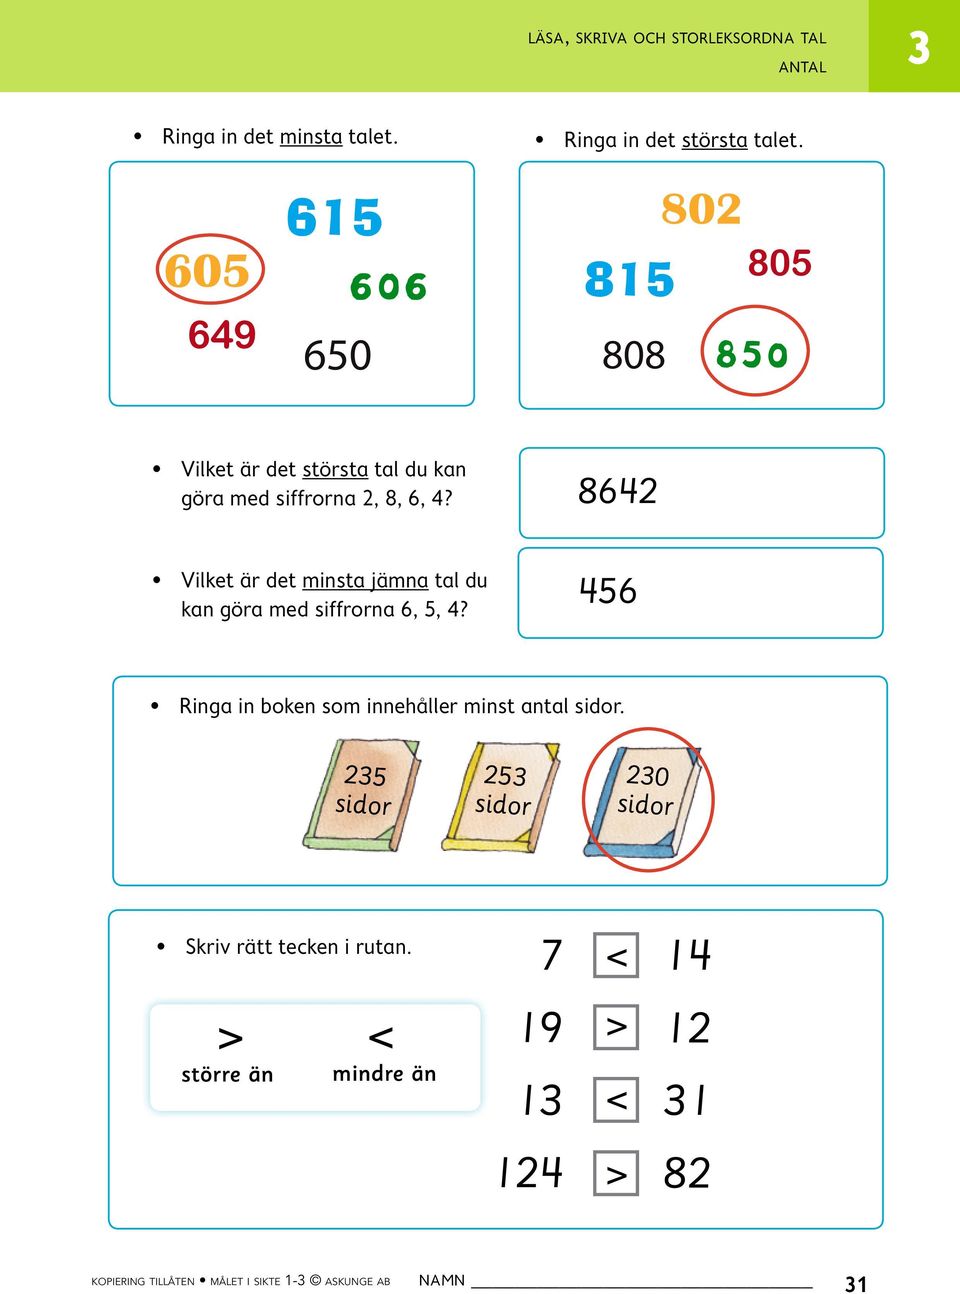 8642 Vilket är det minsta jämna tal du kan göra med siffrorna 6, 5, 4?